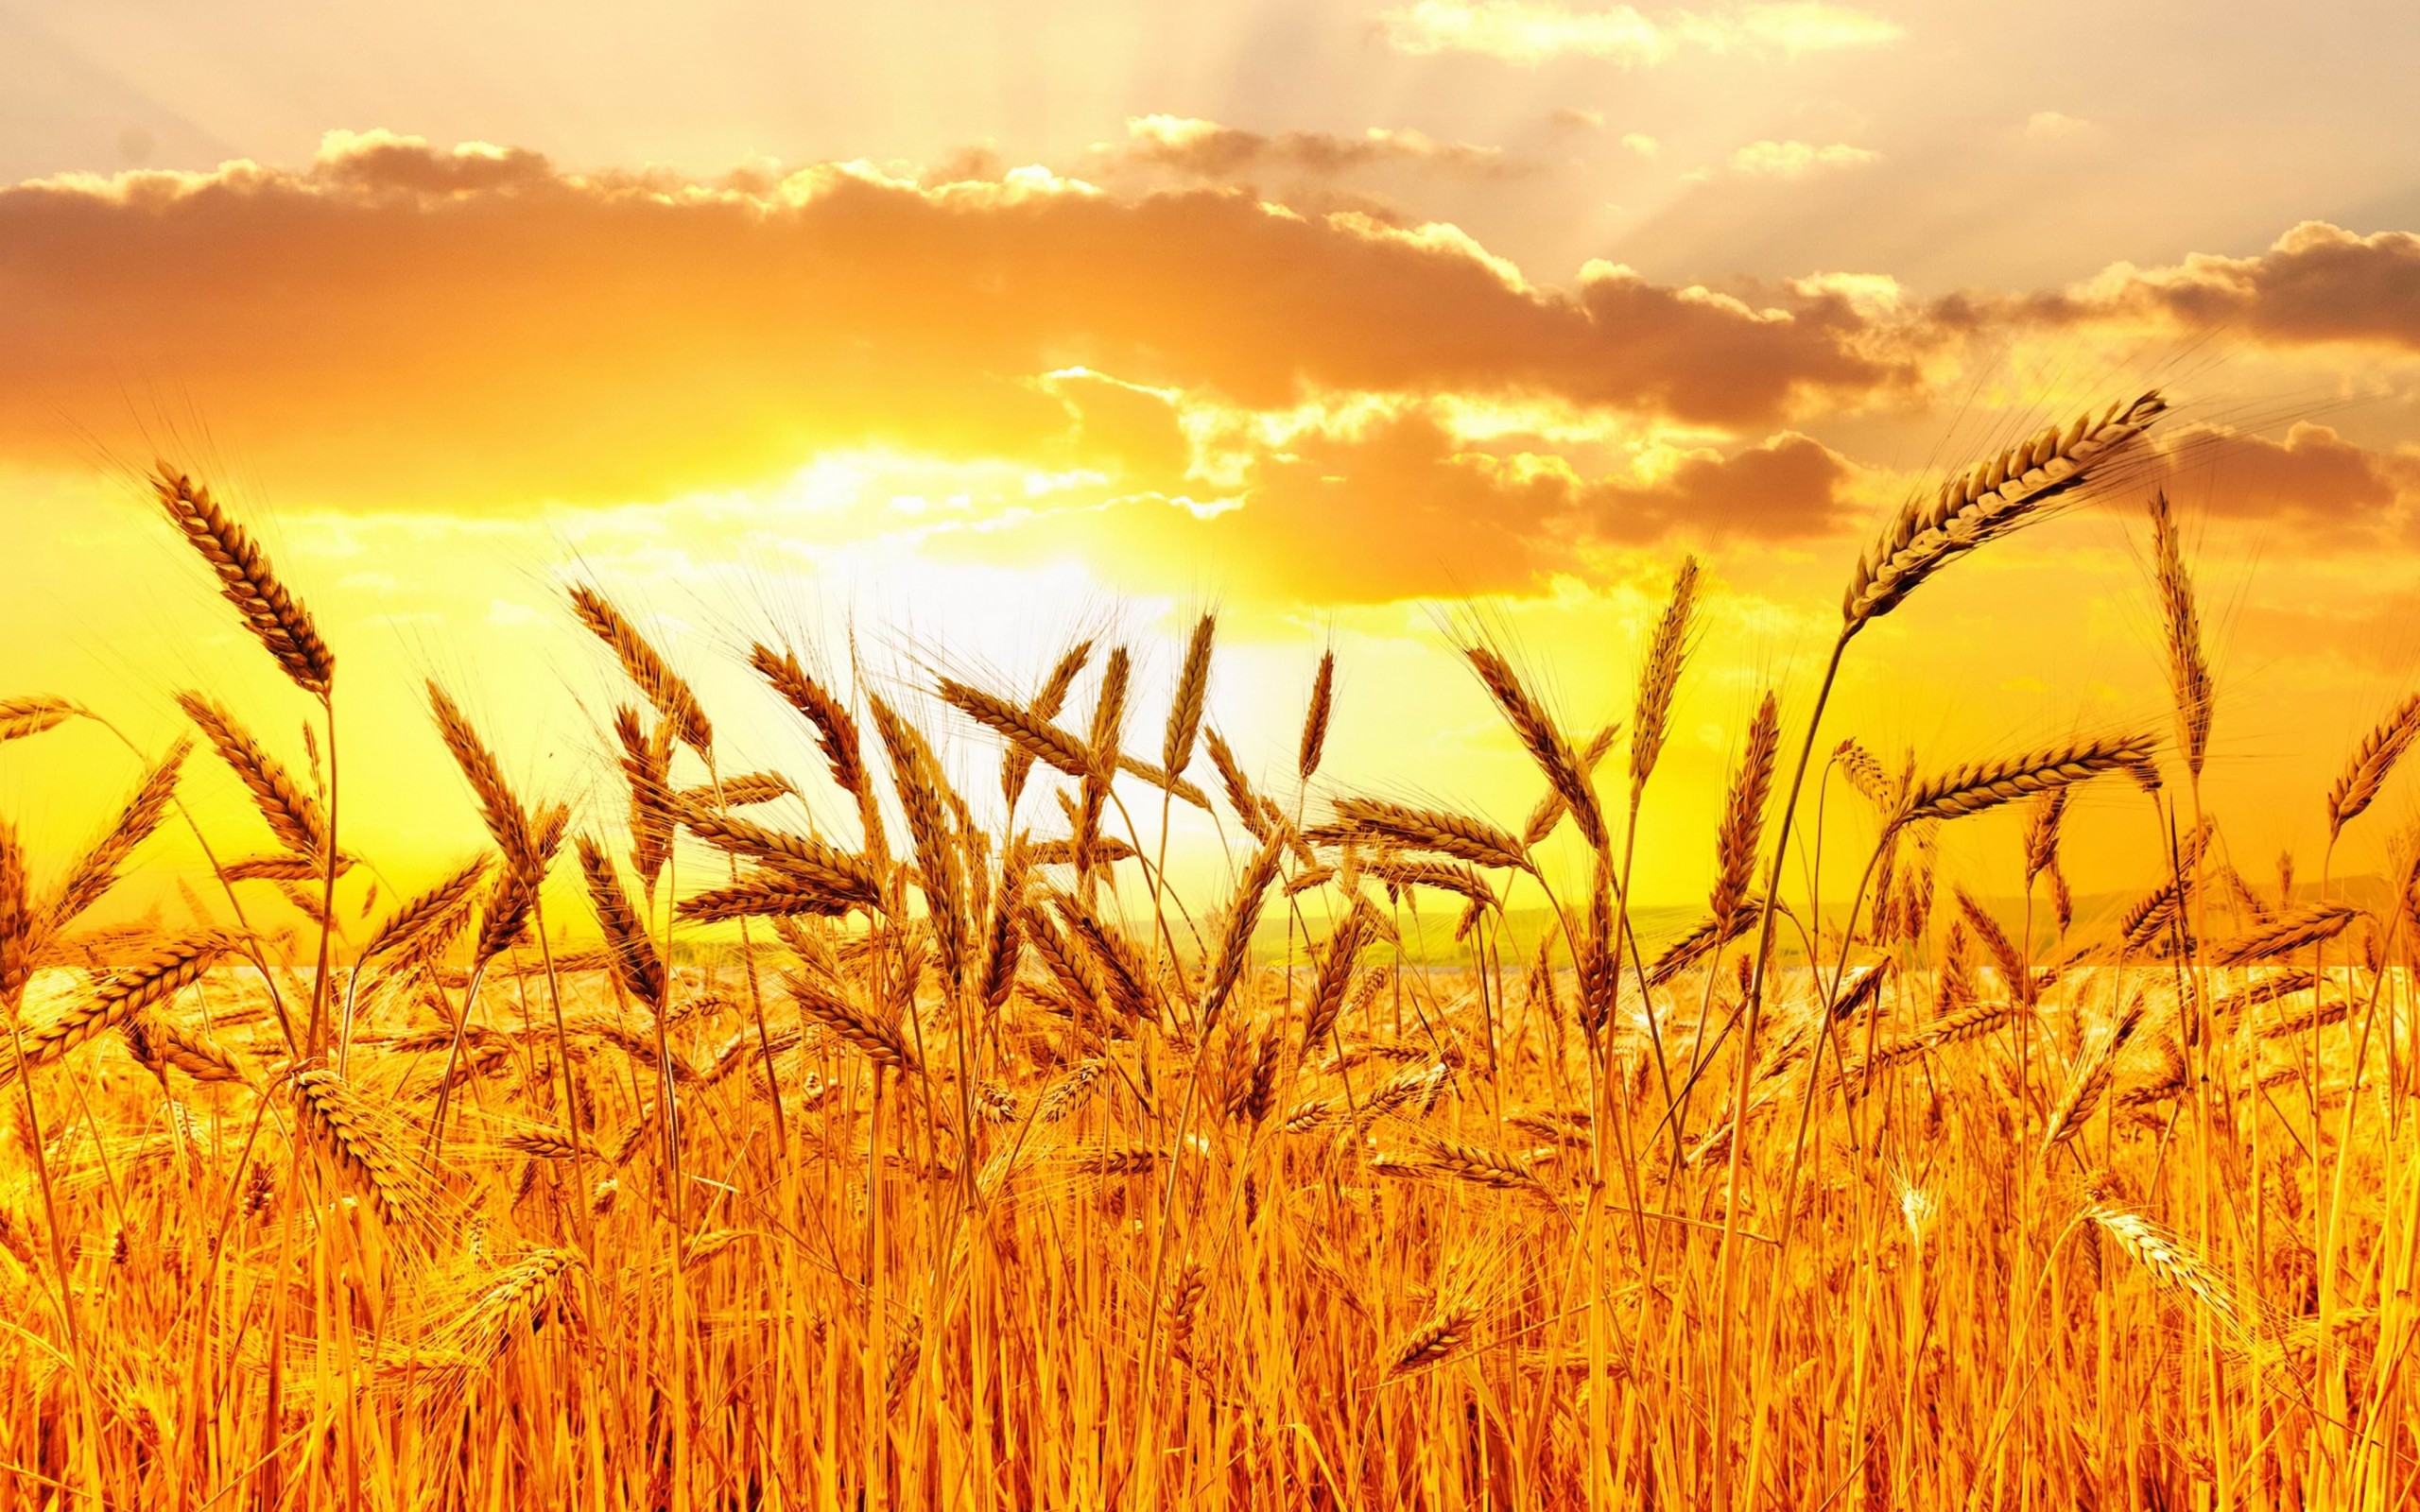 Golden Wheat Field At Sunset Wallpaper for Desktop 2560x1600